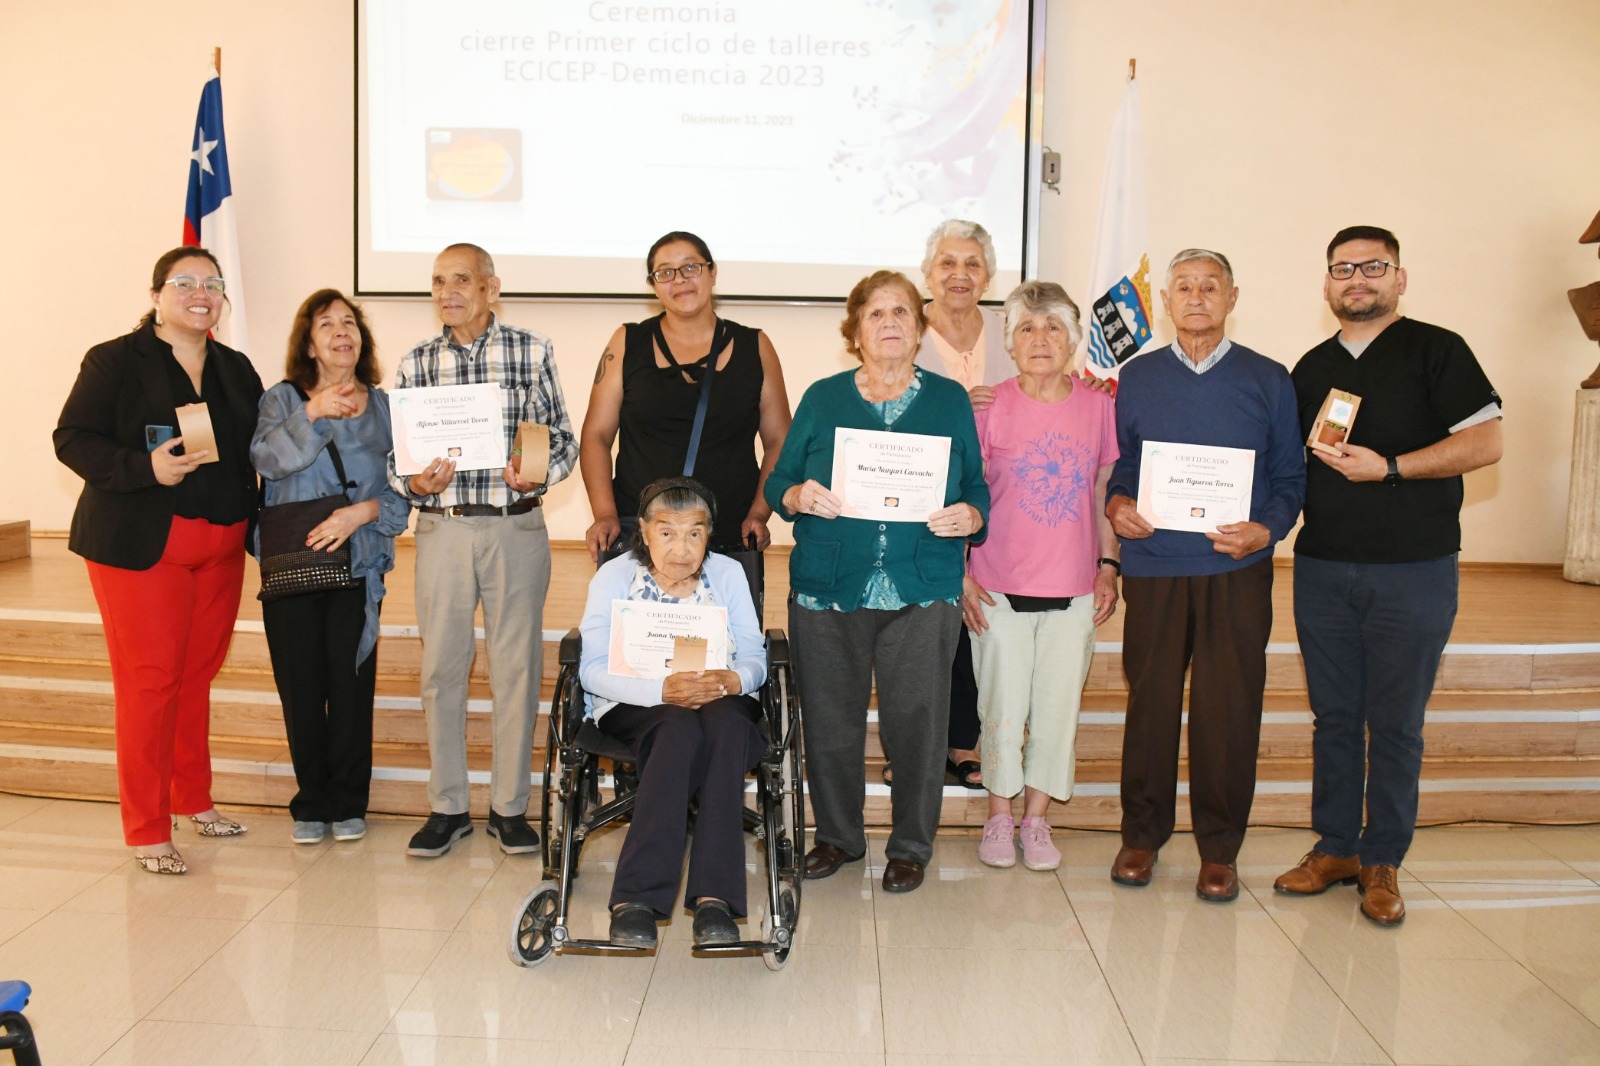 LOS ANDES: Positivas experiencias en el primer ciclo de talleres para usuarios con diagnóstico de demencia de Cesfam Centenario